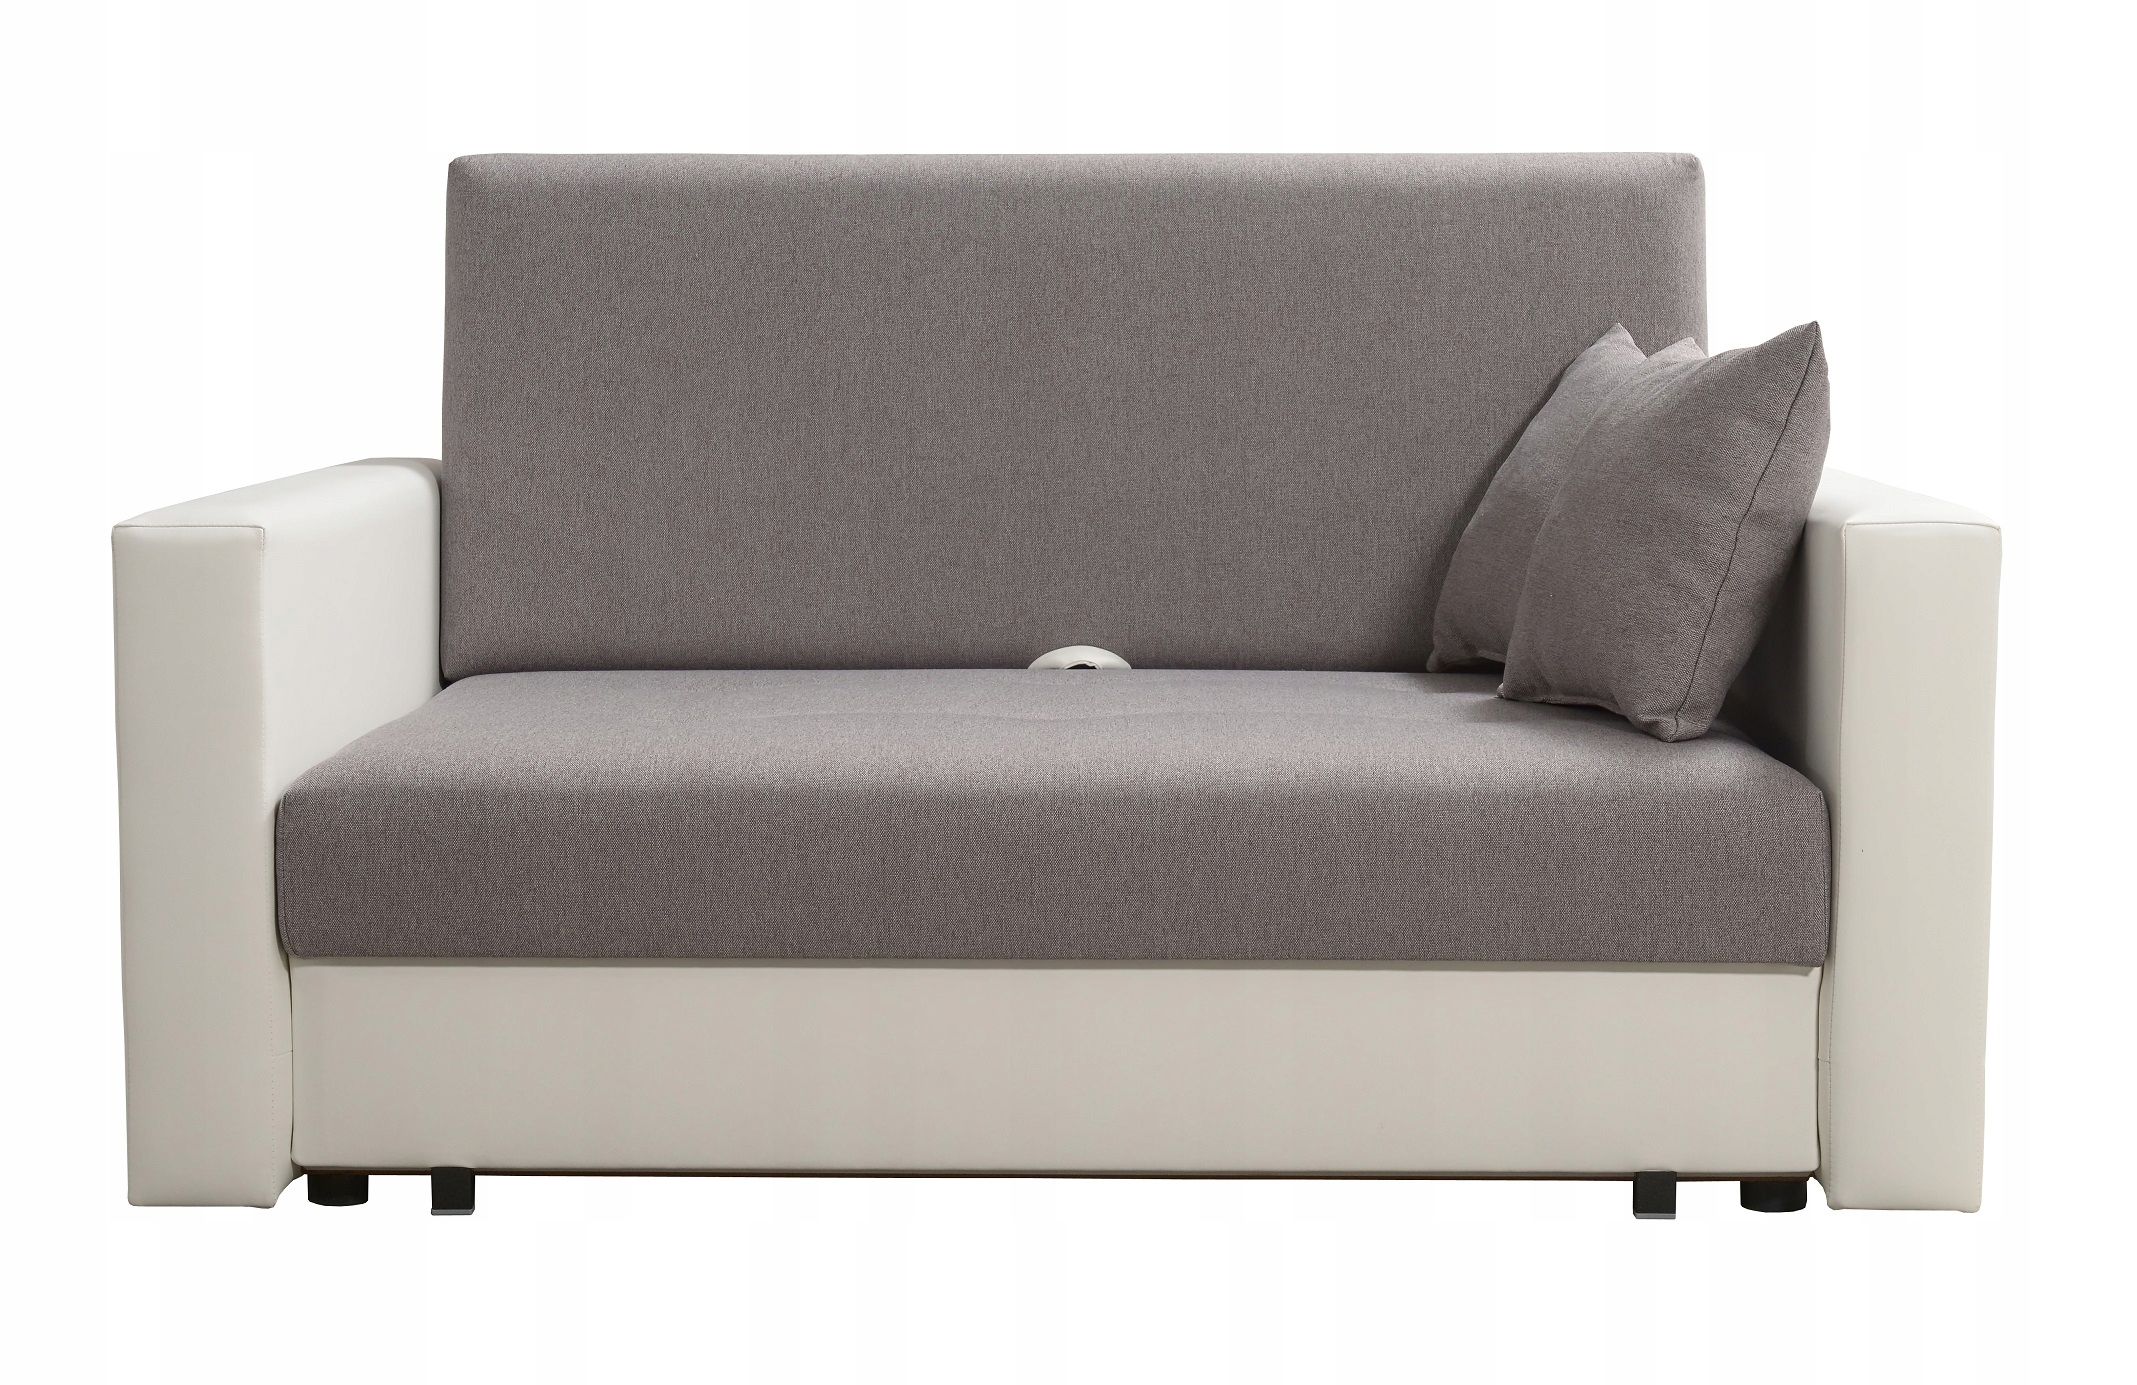 Sofa Smart - amerykanka rozkładana, fotel, dwójka Marka Meble Iwmar